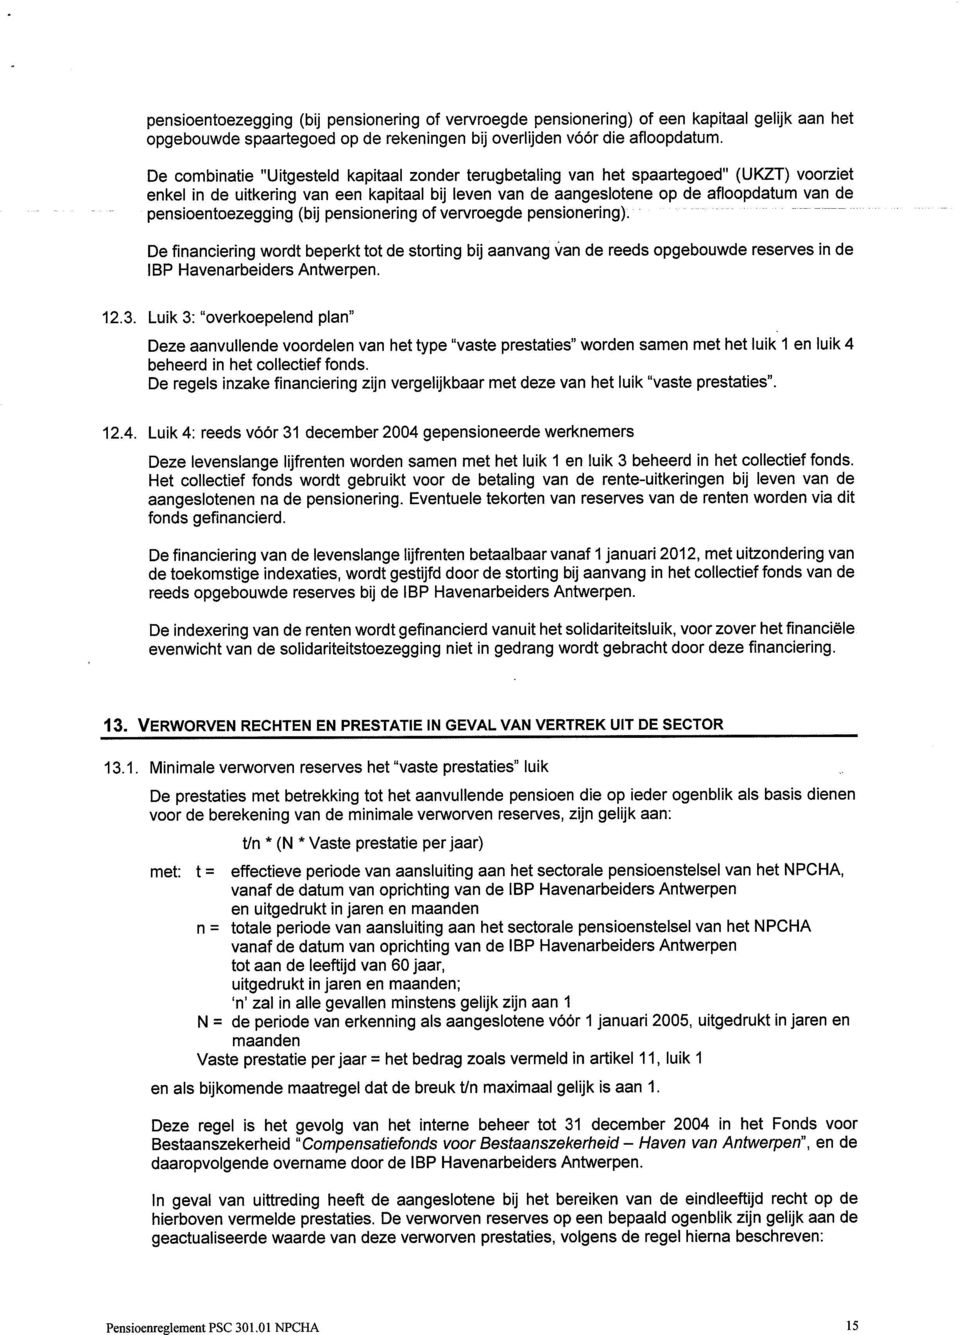 pensioentoezegging (bij pensionering of vervroegde pensionering). De financiering wordt beperkt tot de storting bij aanvang van de reeds opgebouwde reserves in de IBP Havenarbeiders Antwerpen. 12.3.